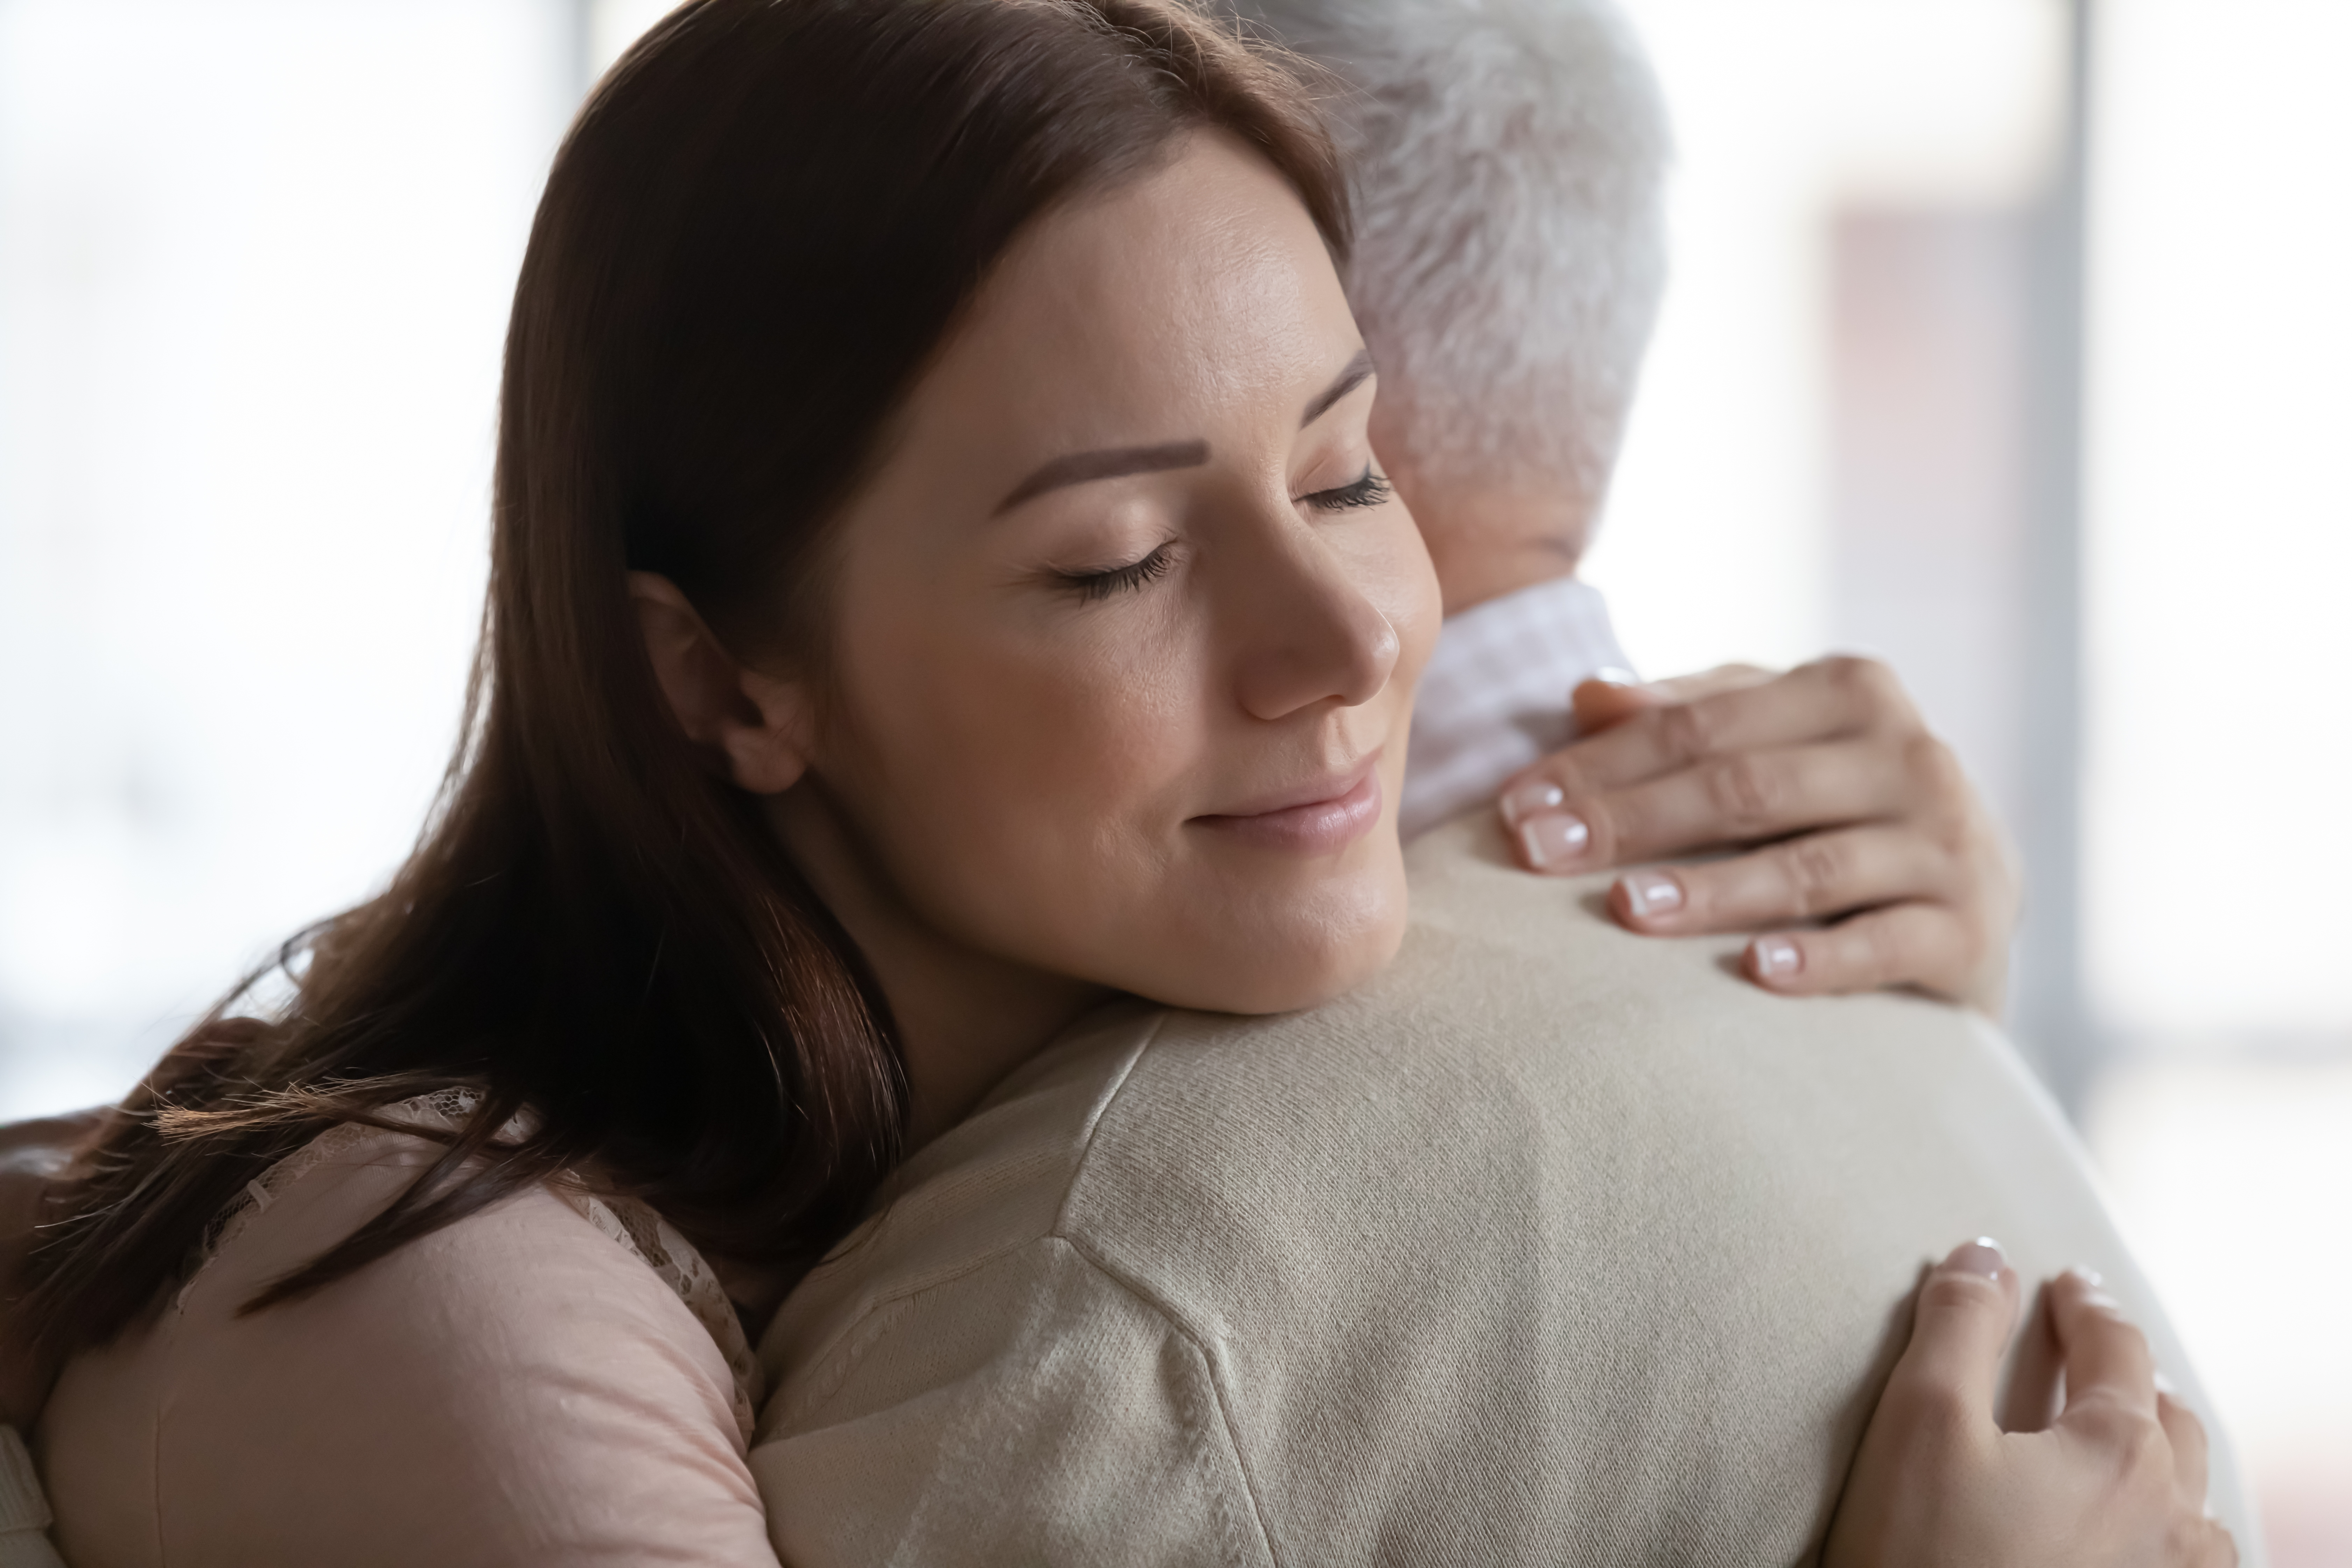 Eine junge Frau umarmt emotional ihren Vater | Quelle: Shutterstock